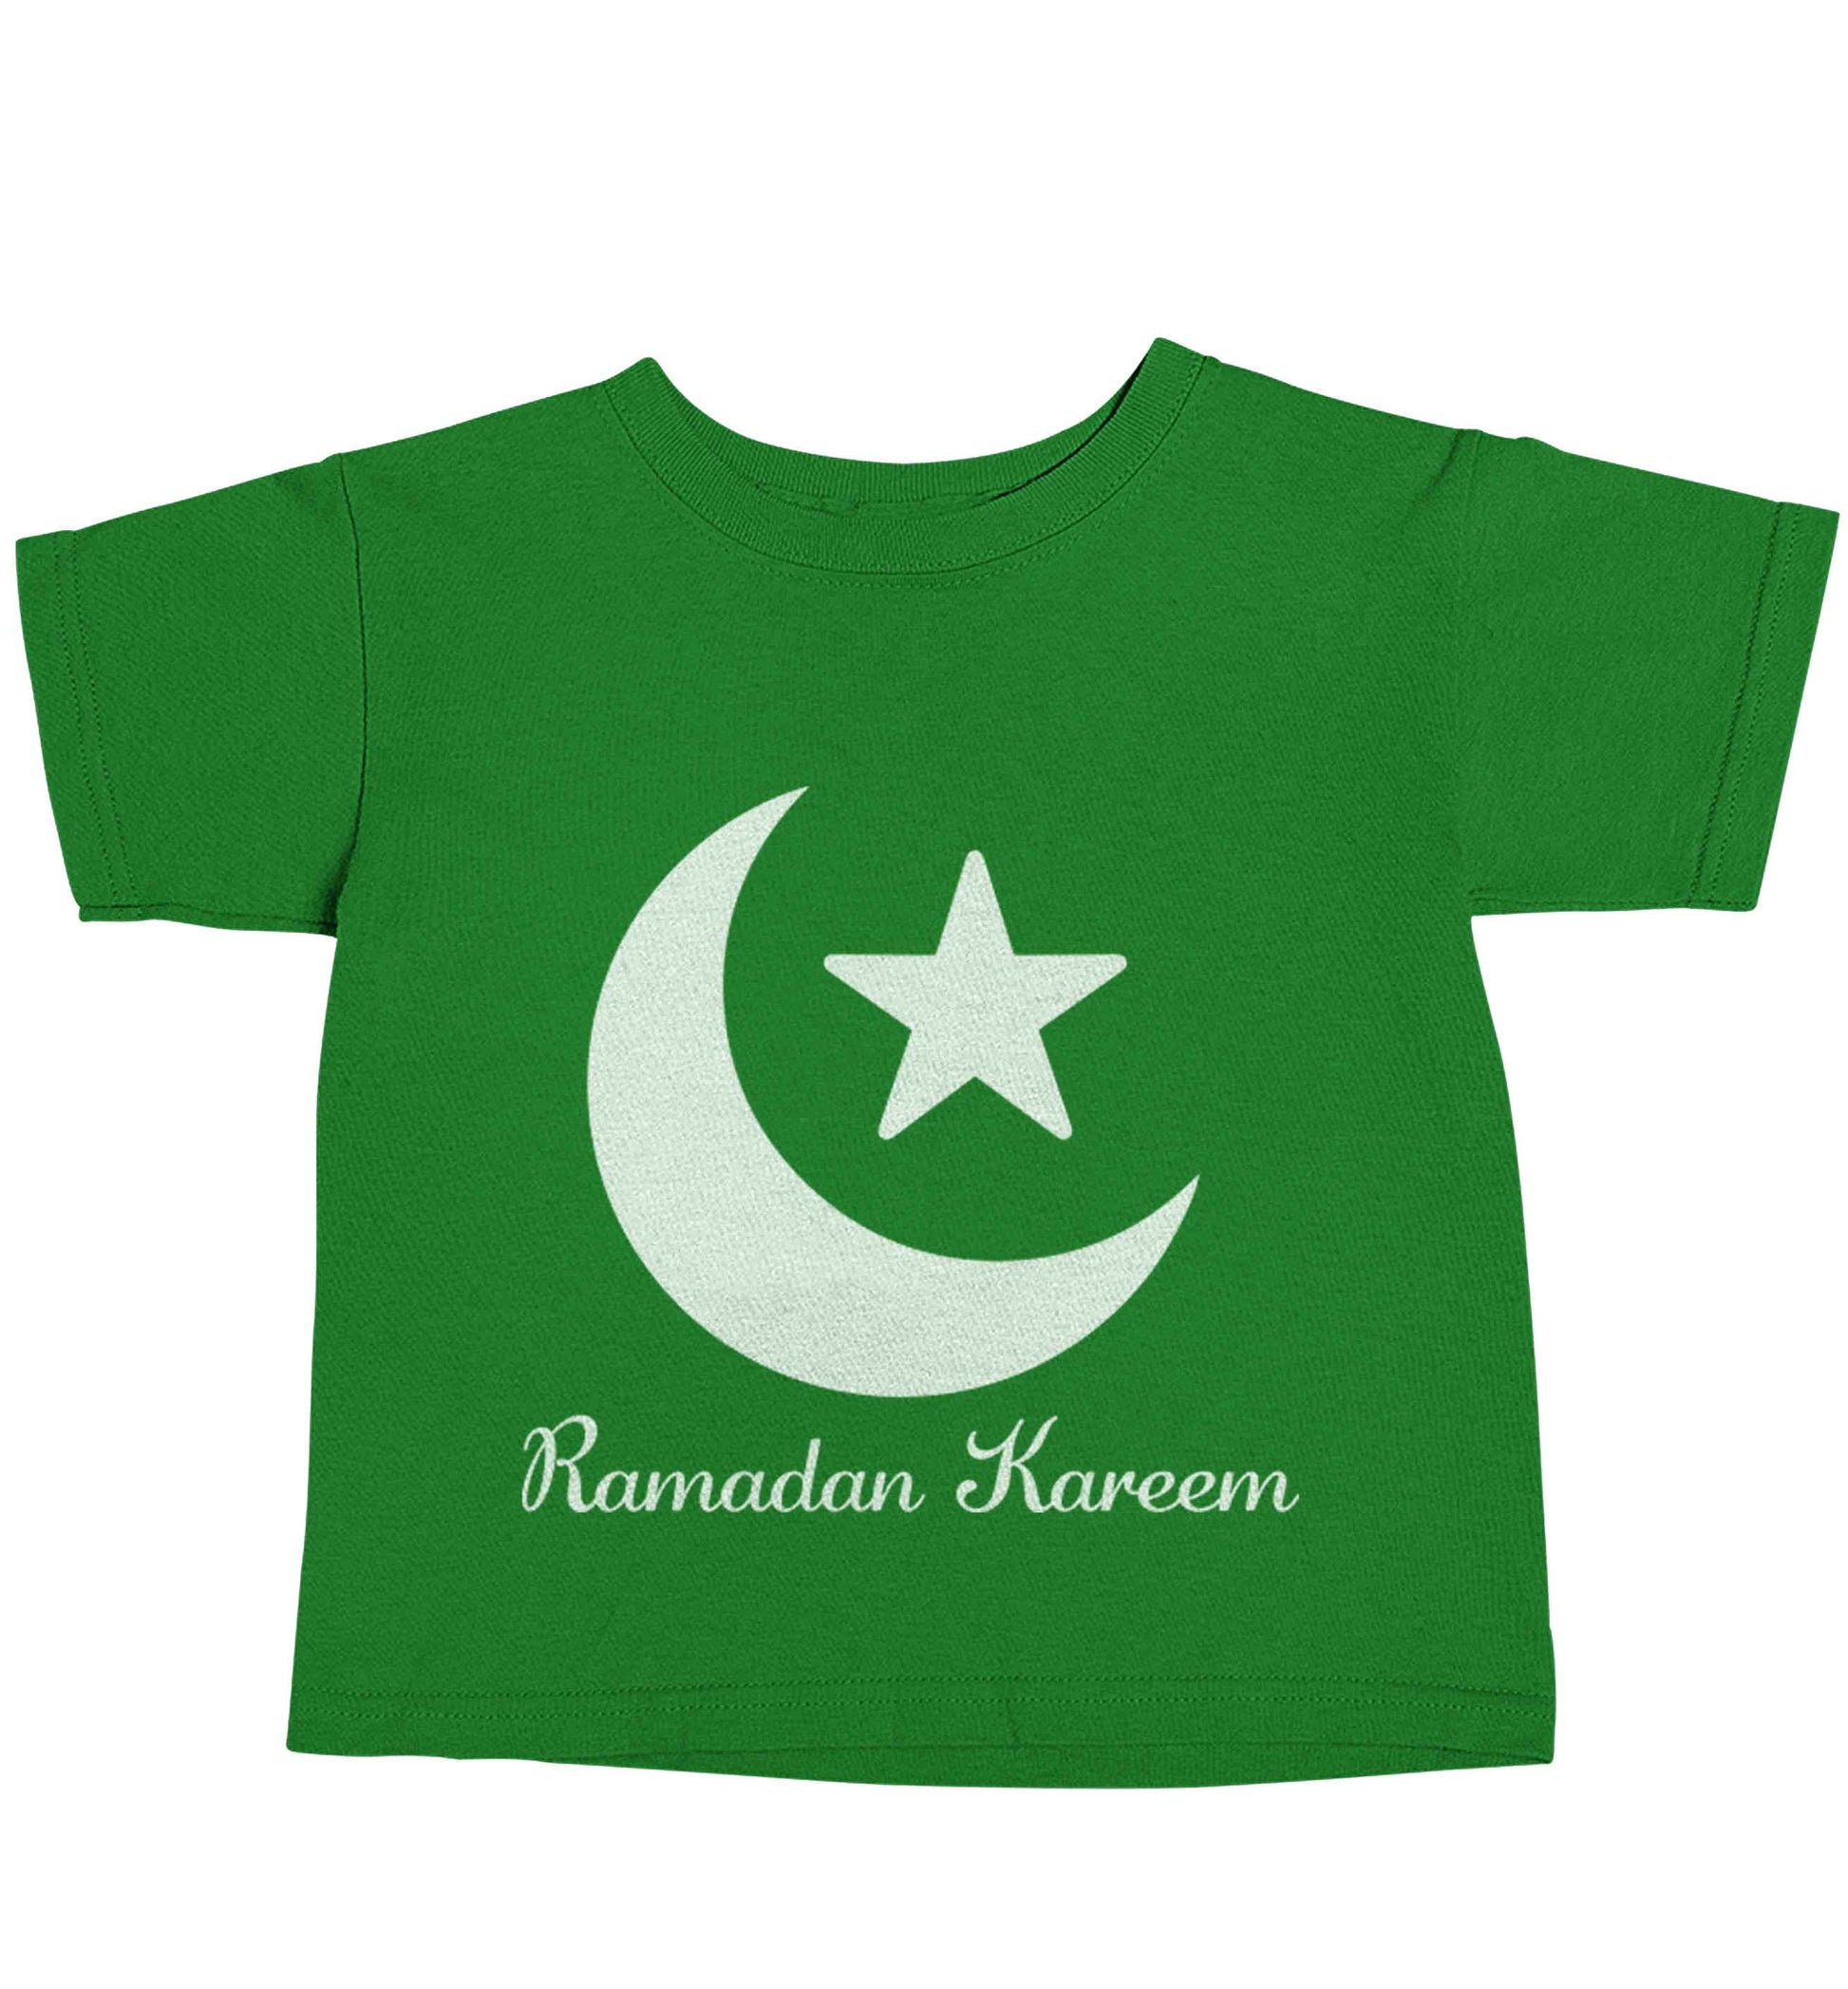 Ramadan kareem green baby toddler Tshirt 2 Years